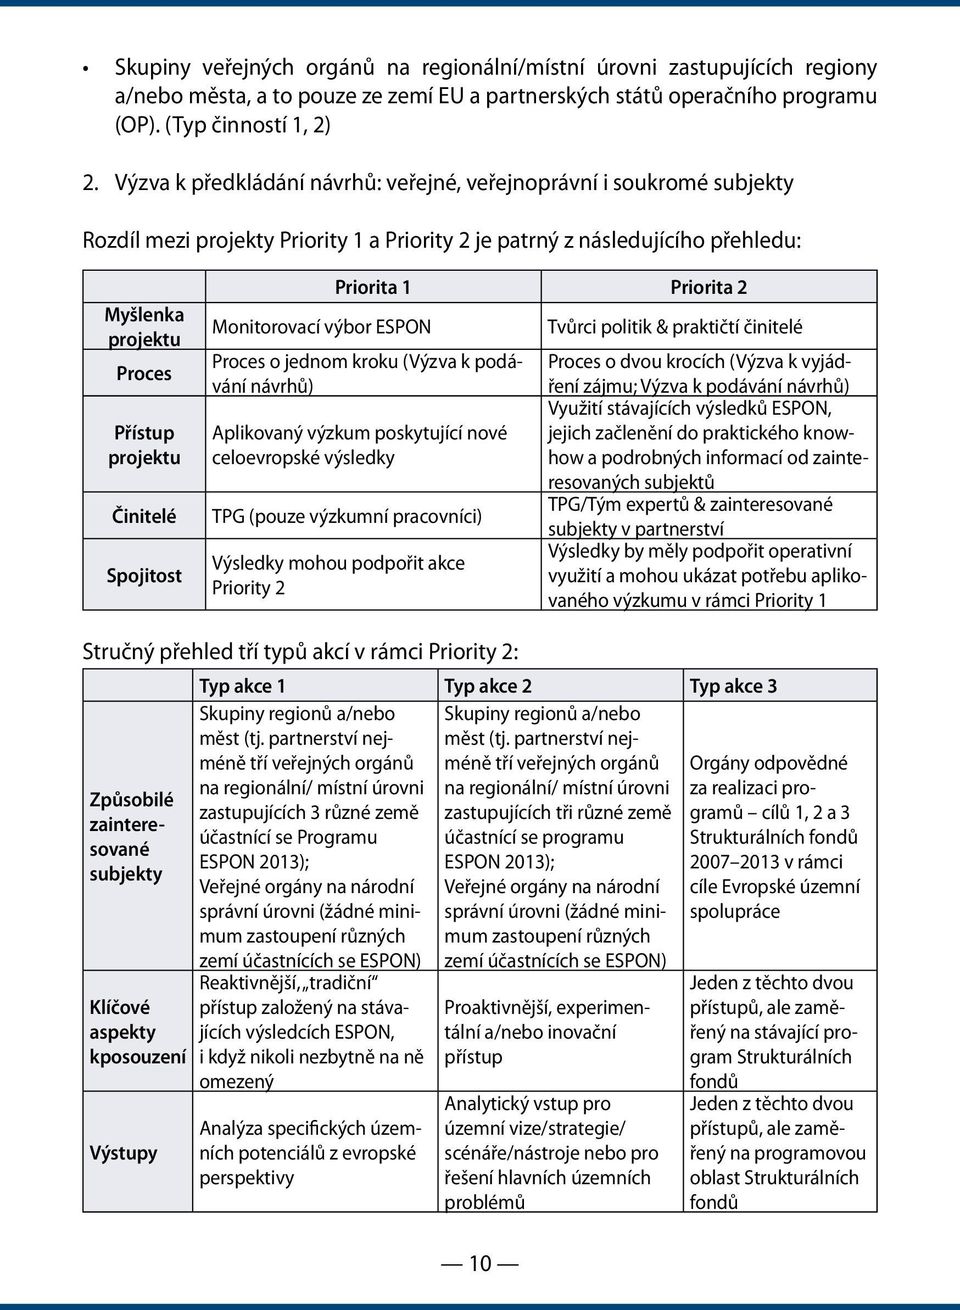 Činitelé Spojitost Monitorovací výbor ESPON Priorita 1 Priorita 2 Proces o jednom kroku (Výzva k podávání návrhů) Aplikovaný výzkum poskytující nové celoevropské výsledky TPG (pouze výzkumní